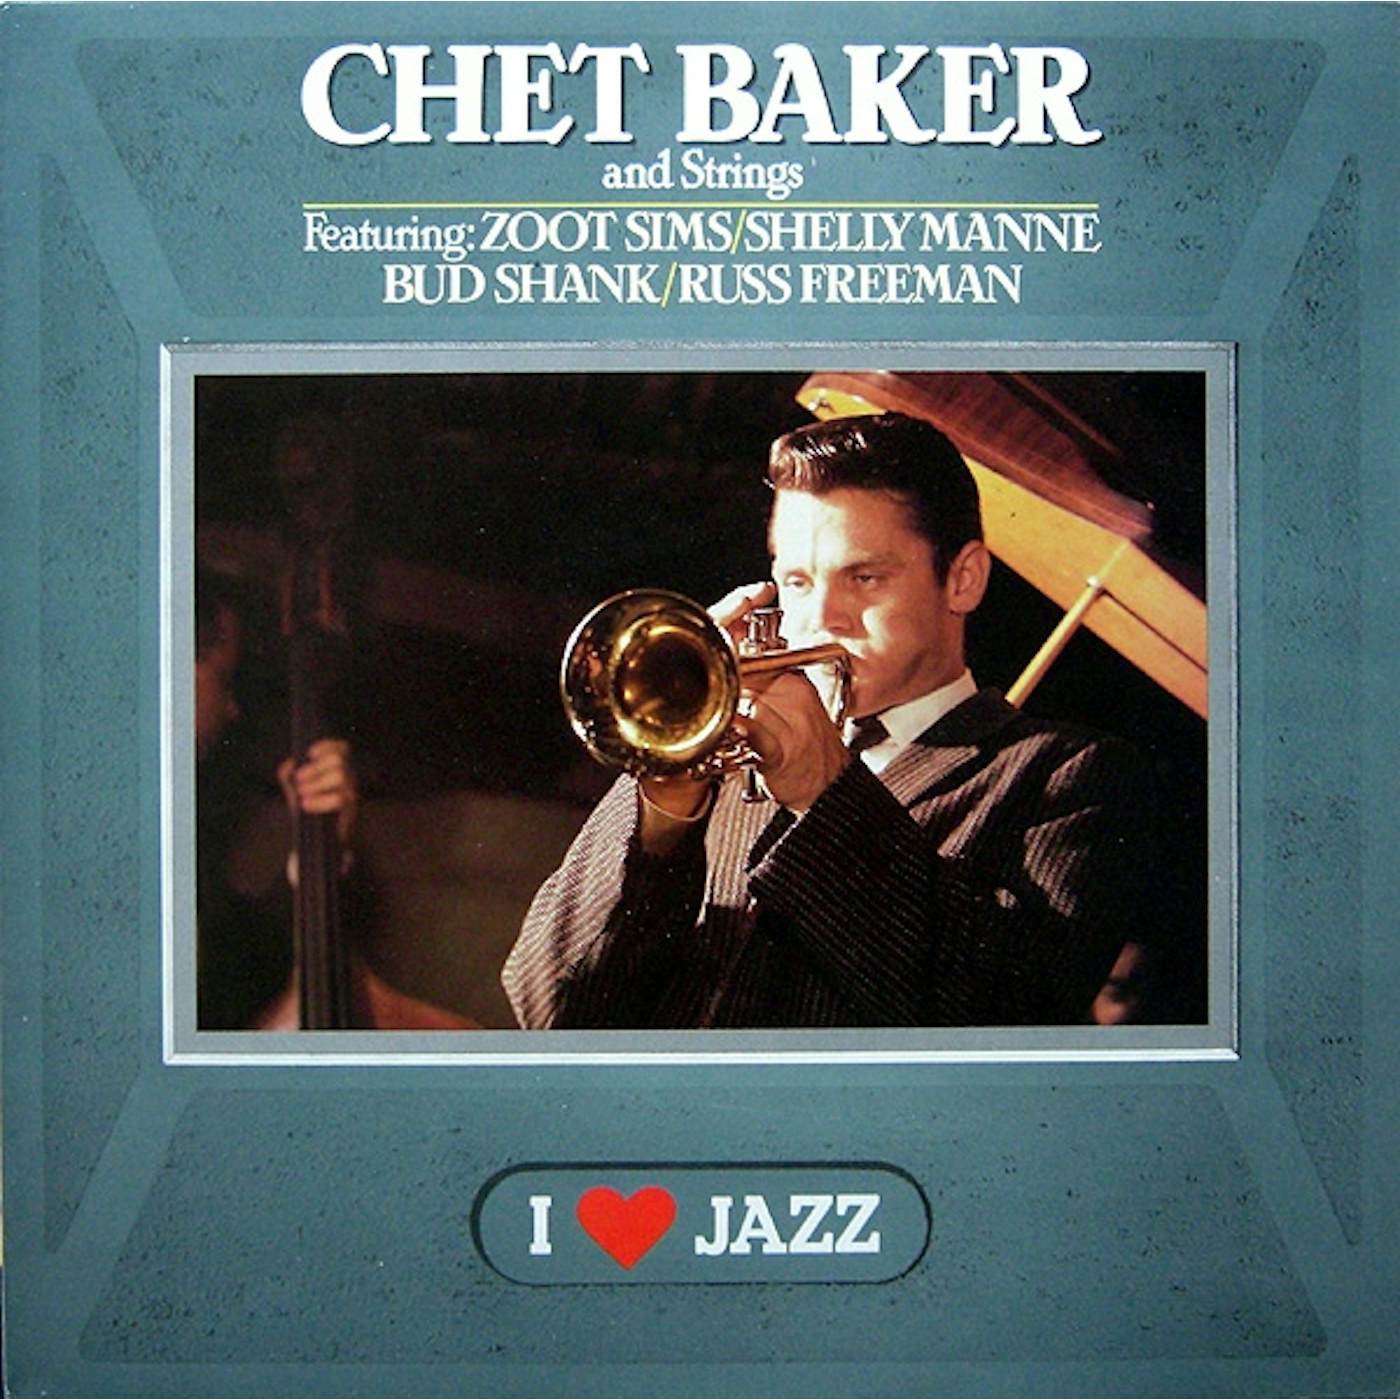 Chet Baker & Strings Vinyl Record